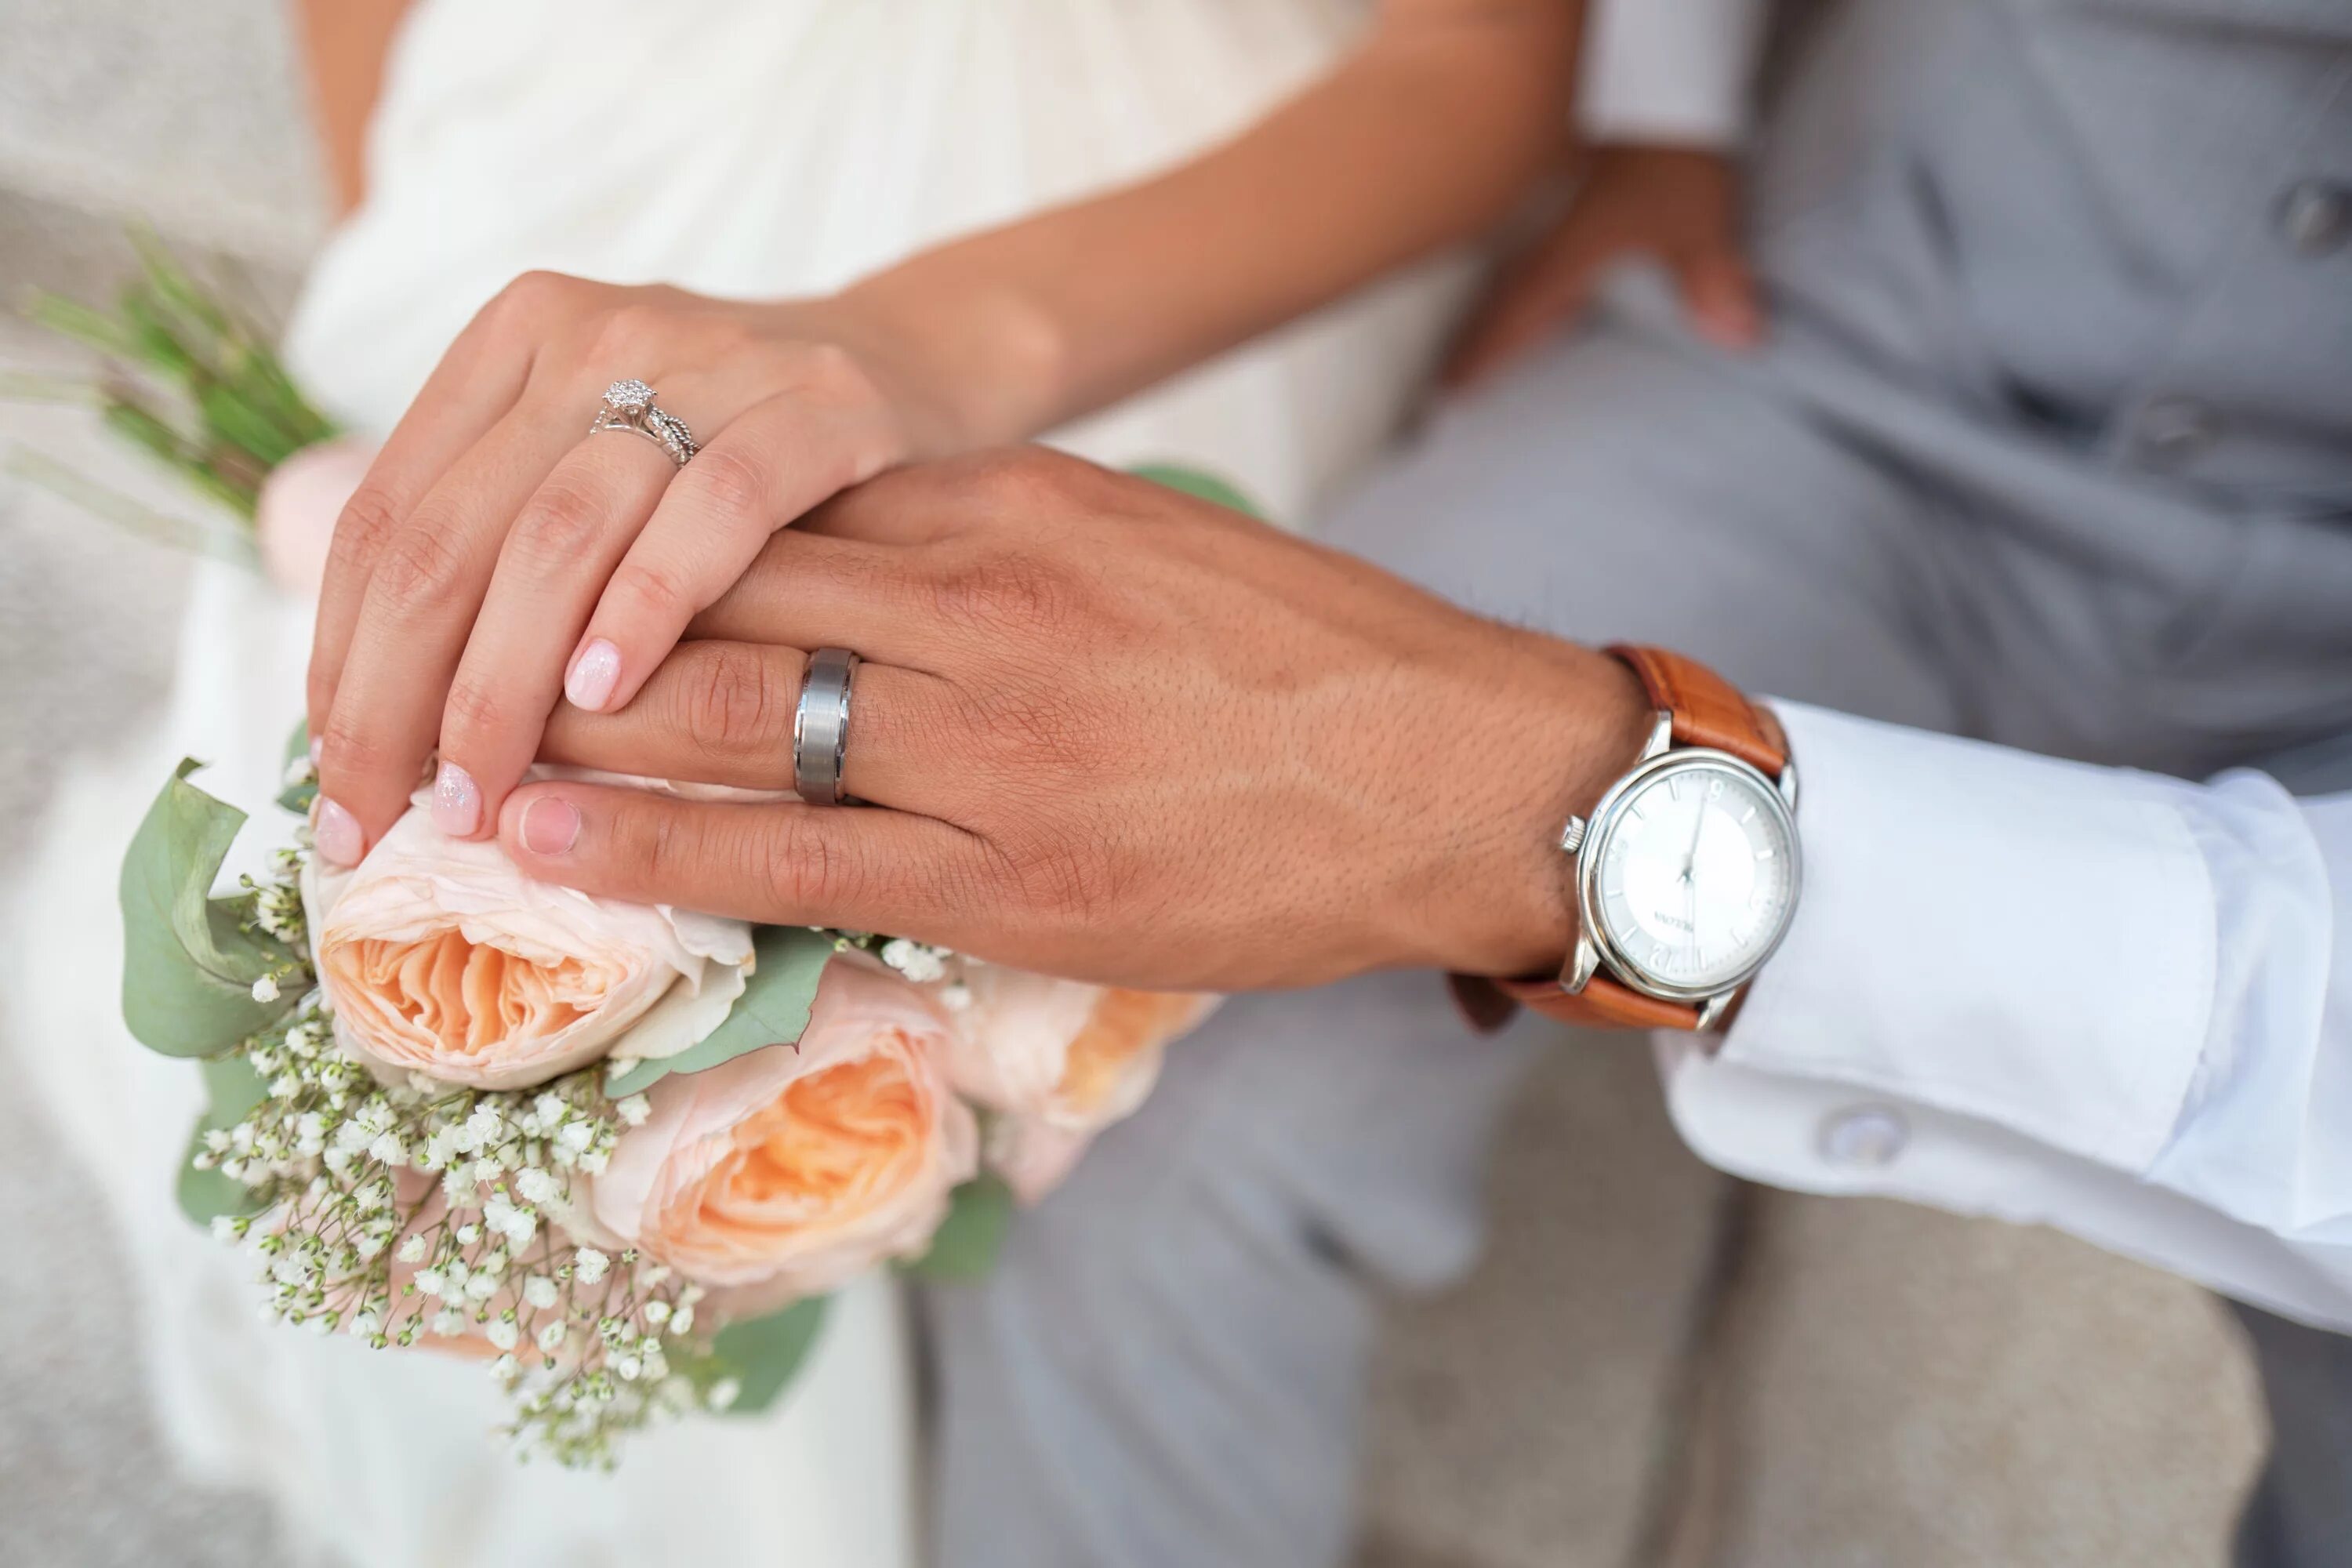 Кольцо замужества. Свадебные кольца. Обручальные кольца на руках. Кольца на свадьбу обручальные. Обручальные кольца на руках жениха и невесты.